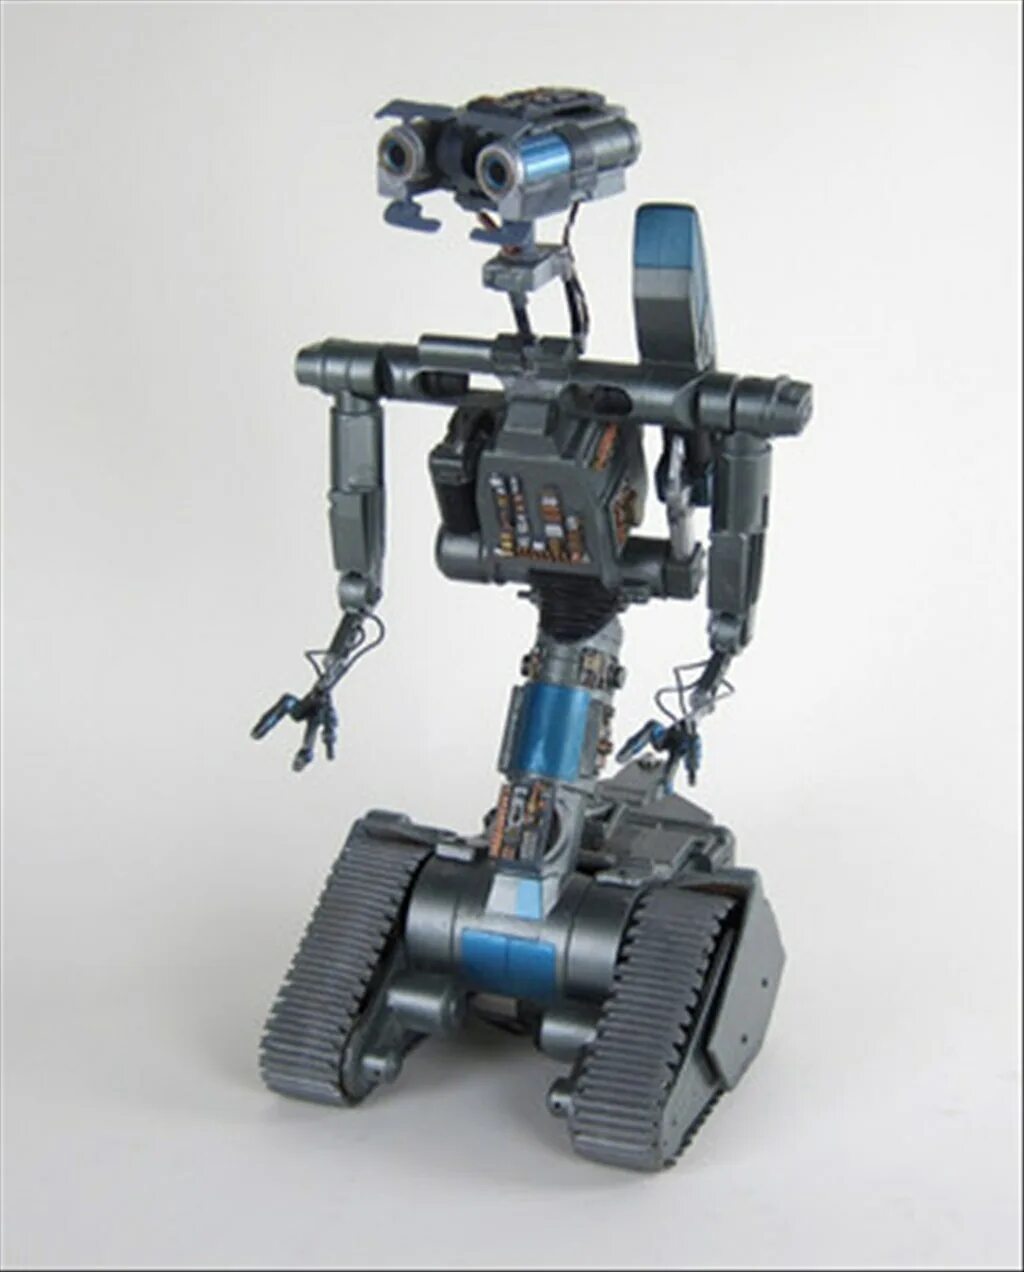 Robot short. Short circuit Johnny 5 робот. Джонни 5 короткое замыкание. Робот Джонни 5 игрушка.